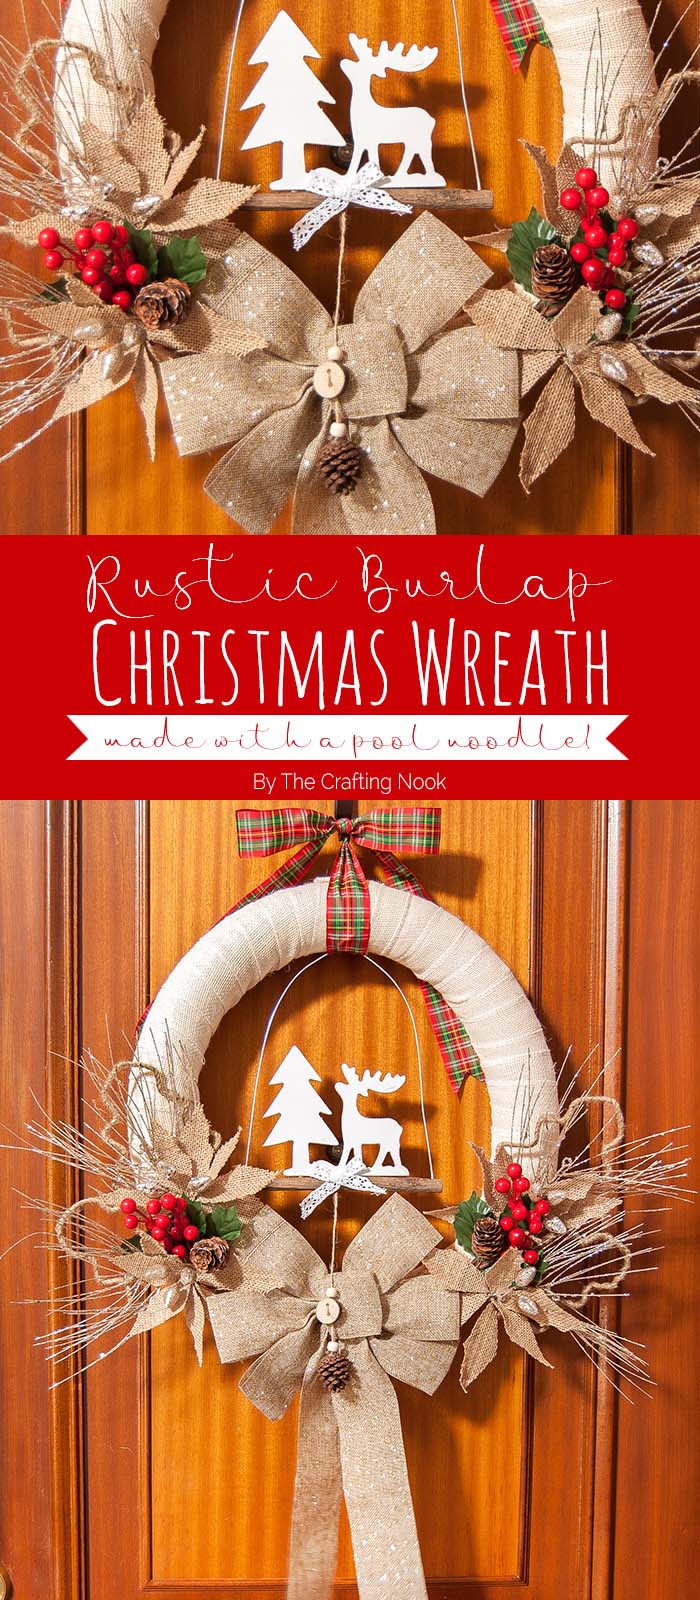 Rustic Burlap Christmas Wreath #Christmas #diy #wreath #decorhomeideas